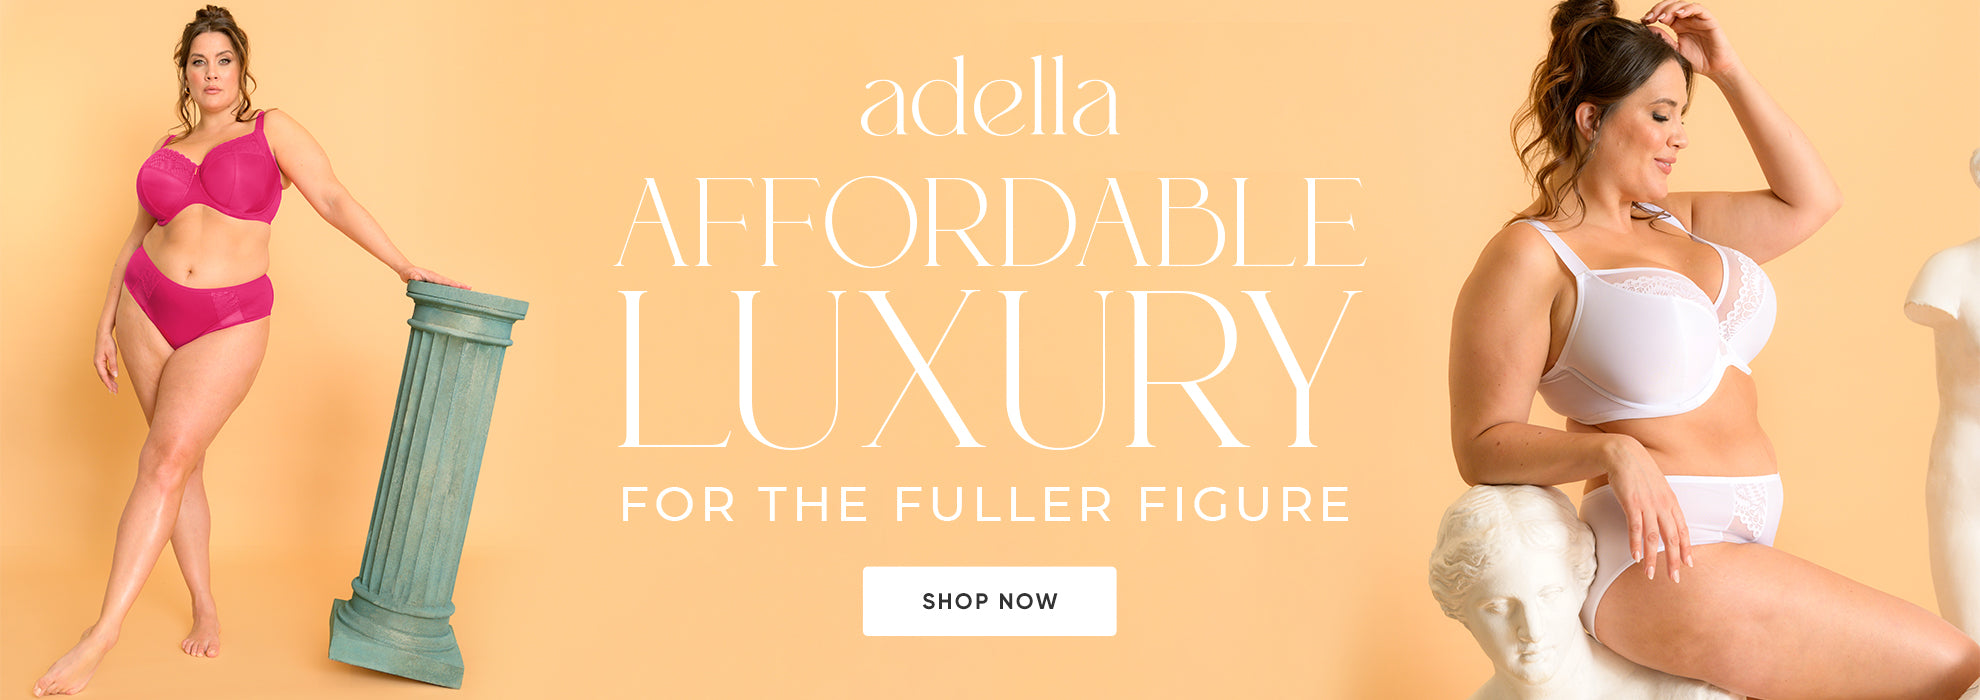 New Fuller Figure, Fuller Bust lingerie brand Adella – Brastop US